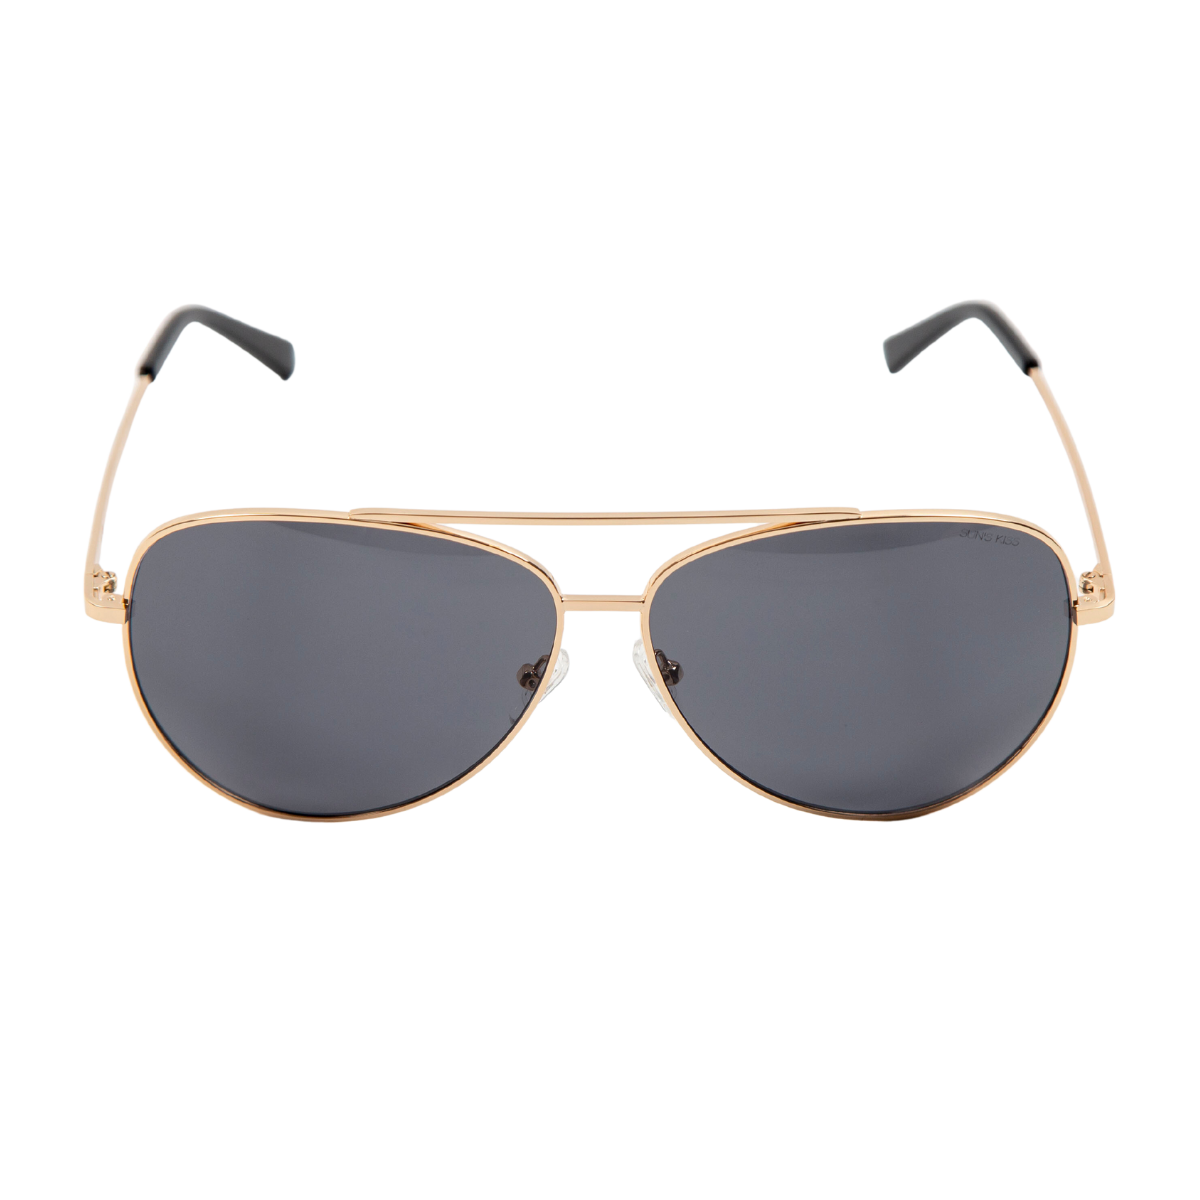 sunglasses, aviator silhouette, wide face sunglasses, gold metal frame, smoky lens, black ear piece 